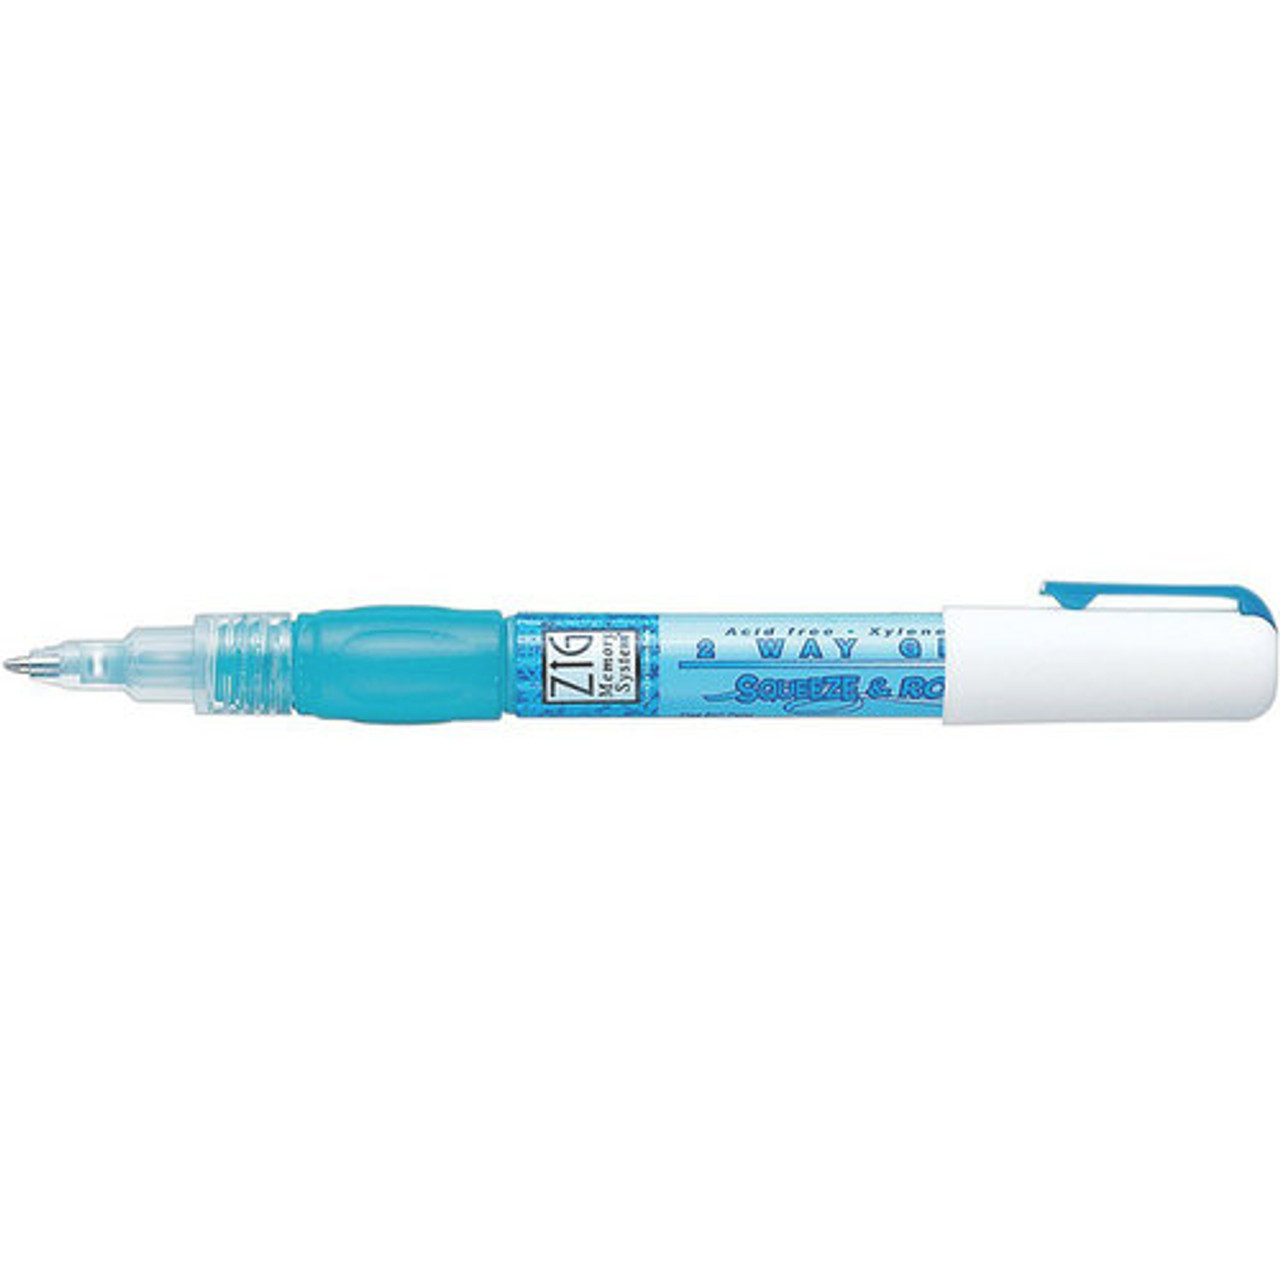 Zig Glue Pen - Squeeze & Roll - 015586945294